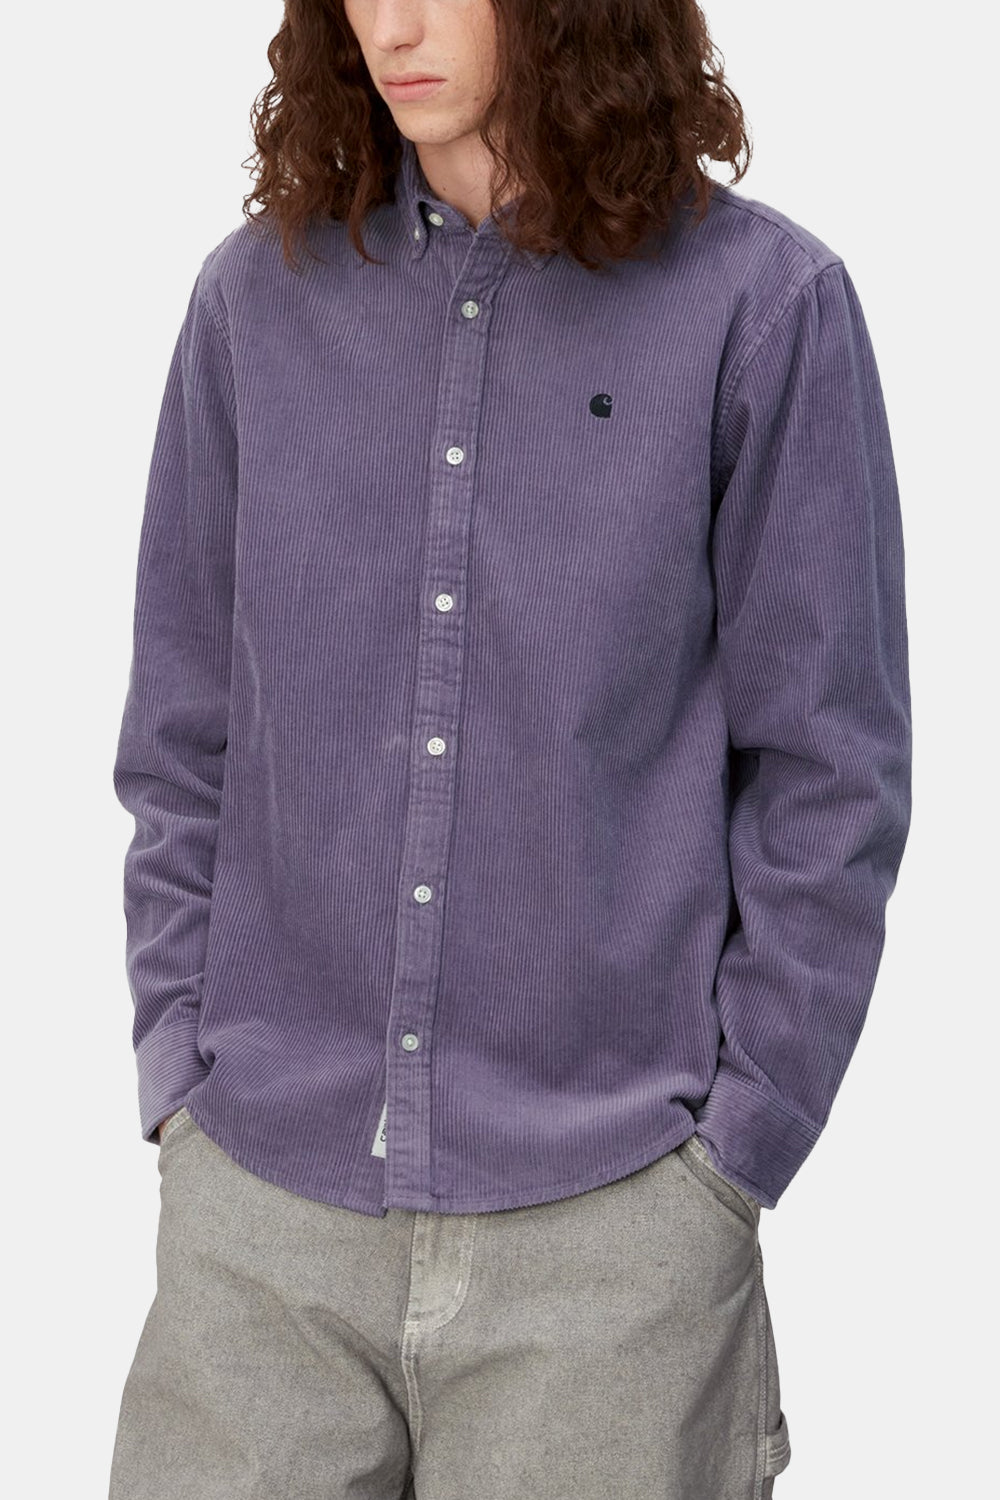 Carhartt WIP Madison Cord Langærmet Skjorte (Glassy Purple/Sort)